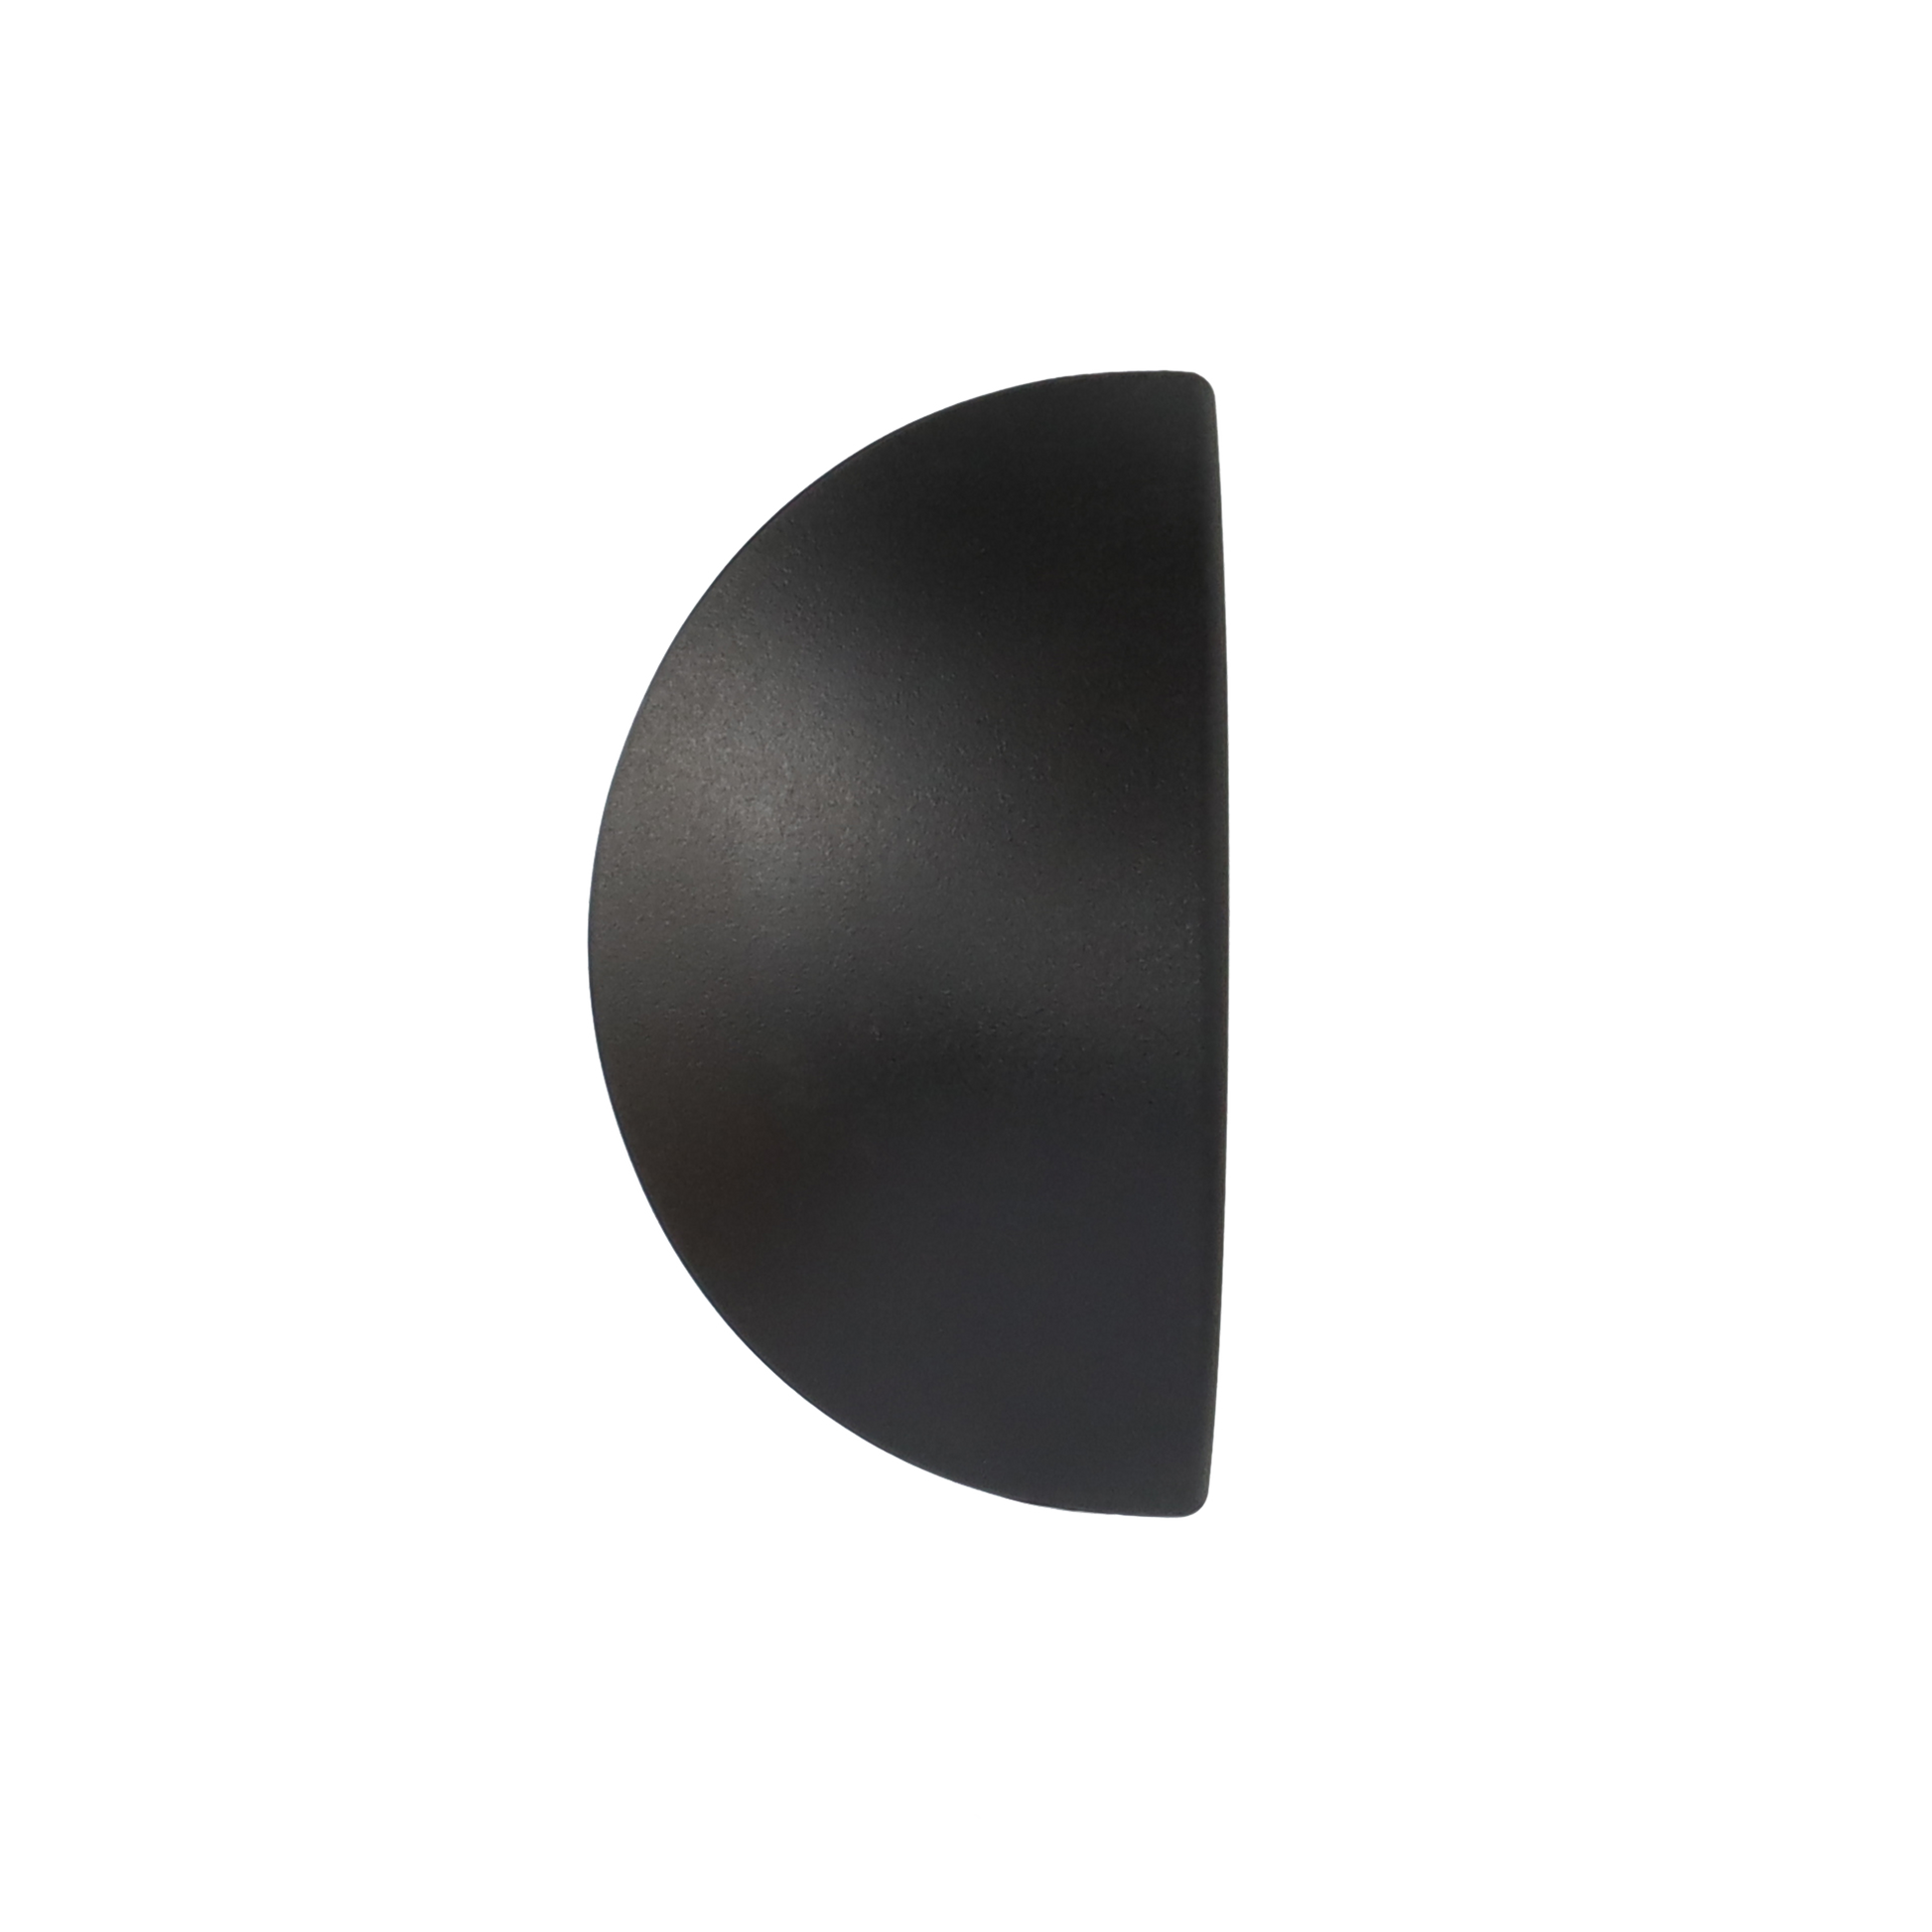 Q-linair Classic dekselknop 16-24 cm zwart bovenaanzicht